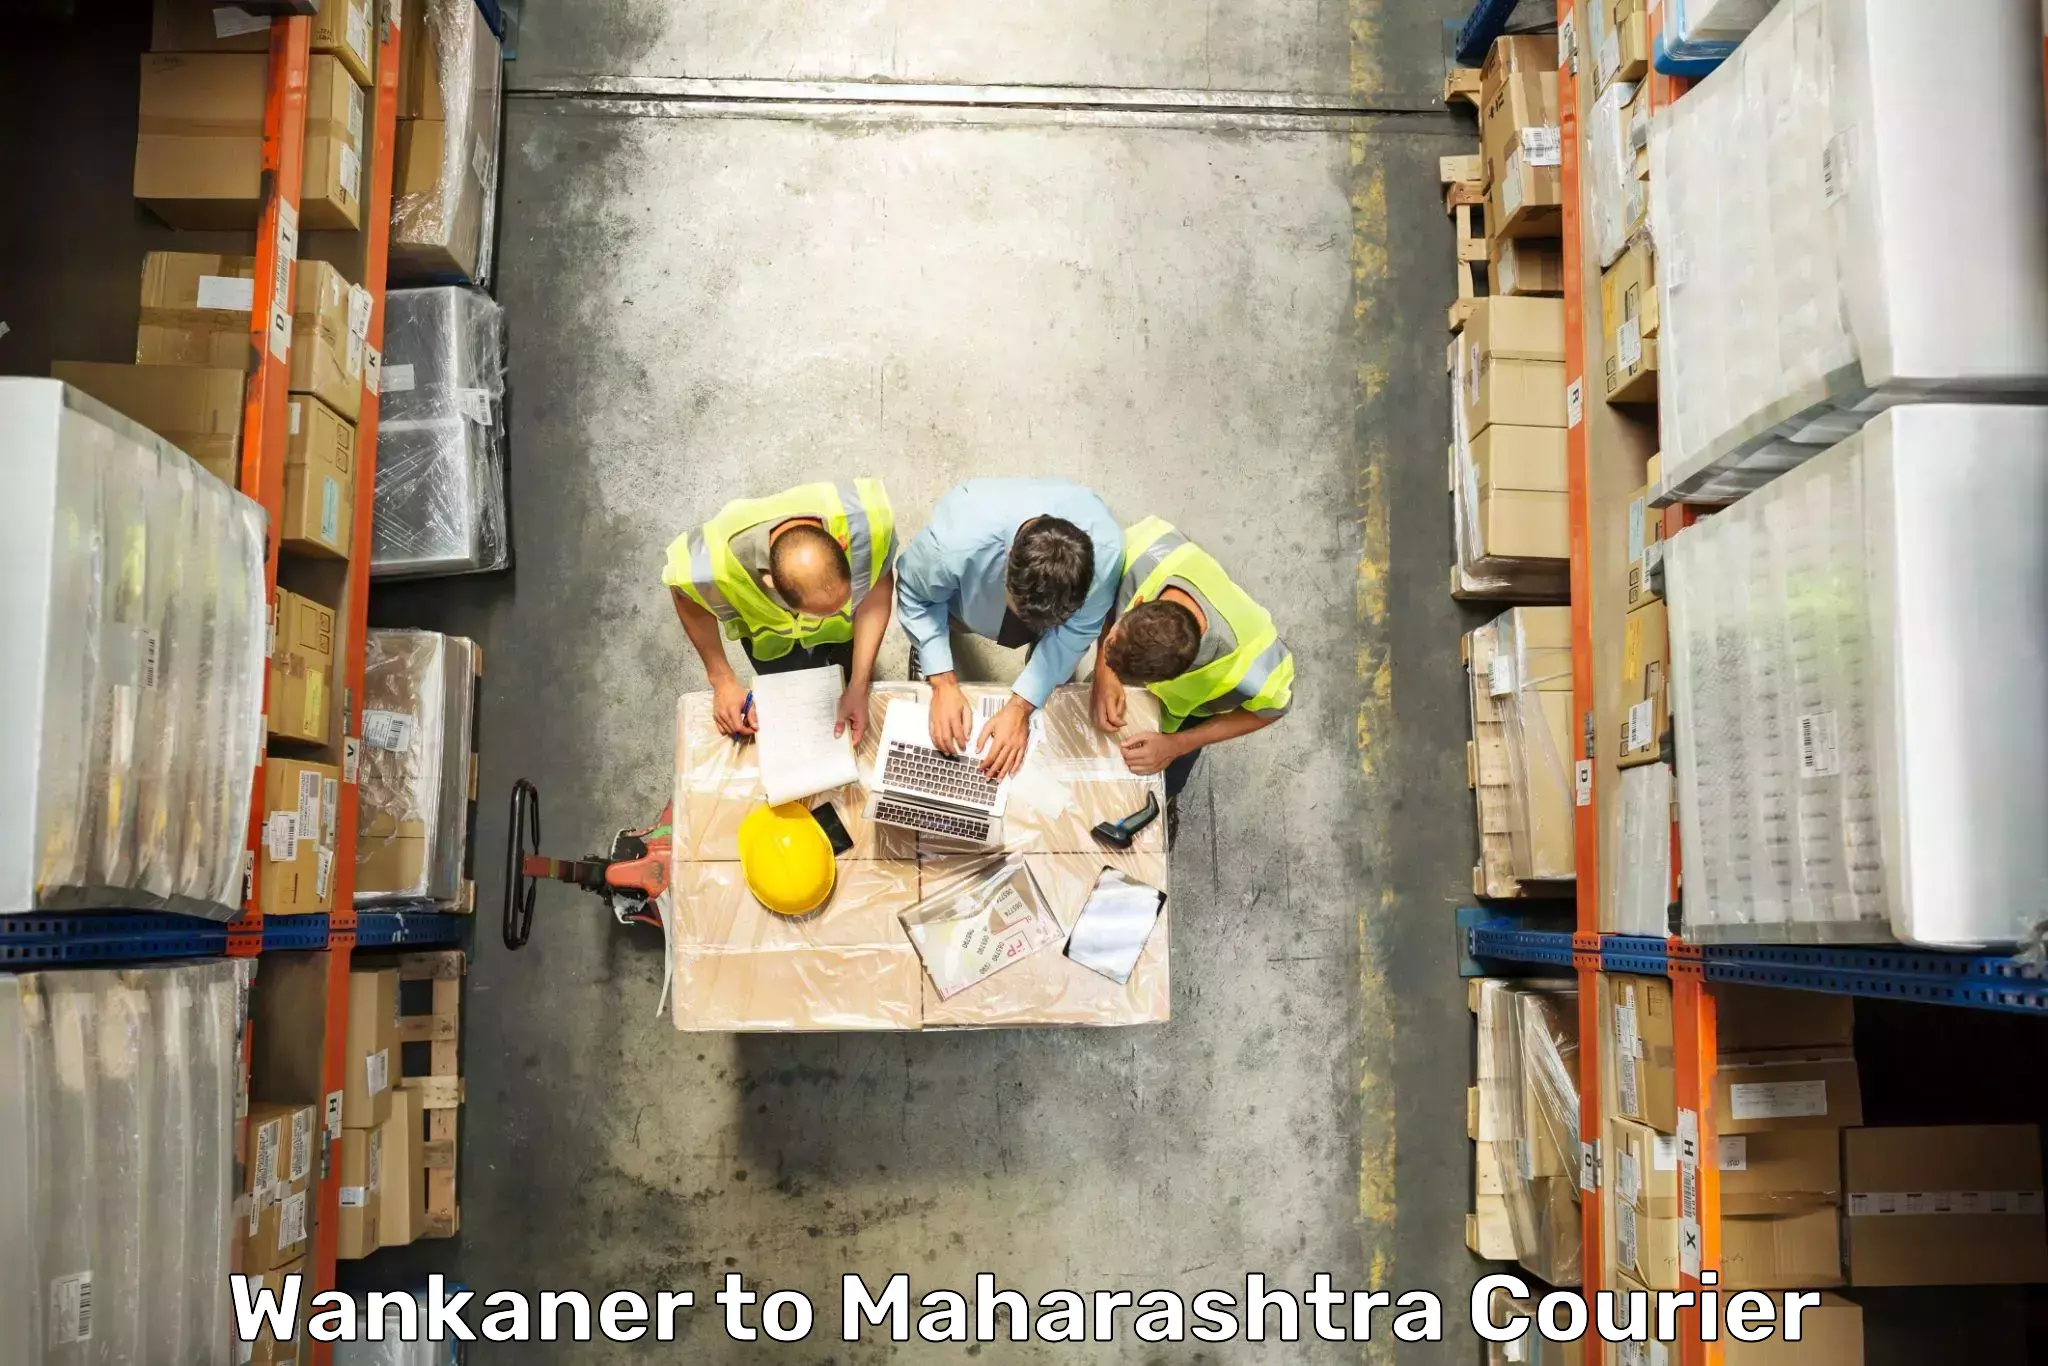 Luggage delivery app Wankaner to Maharashtra